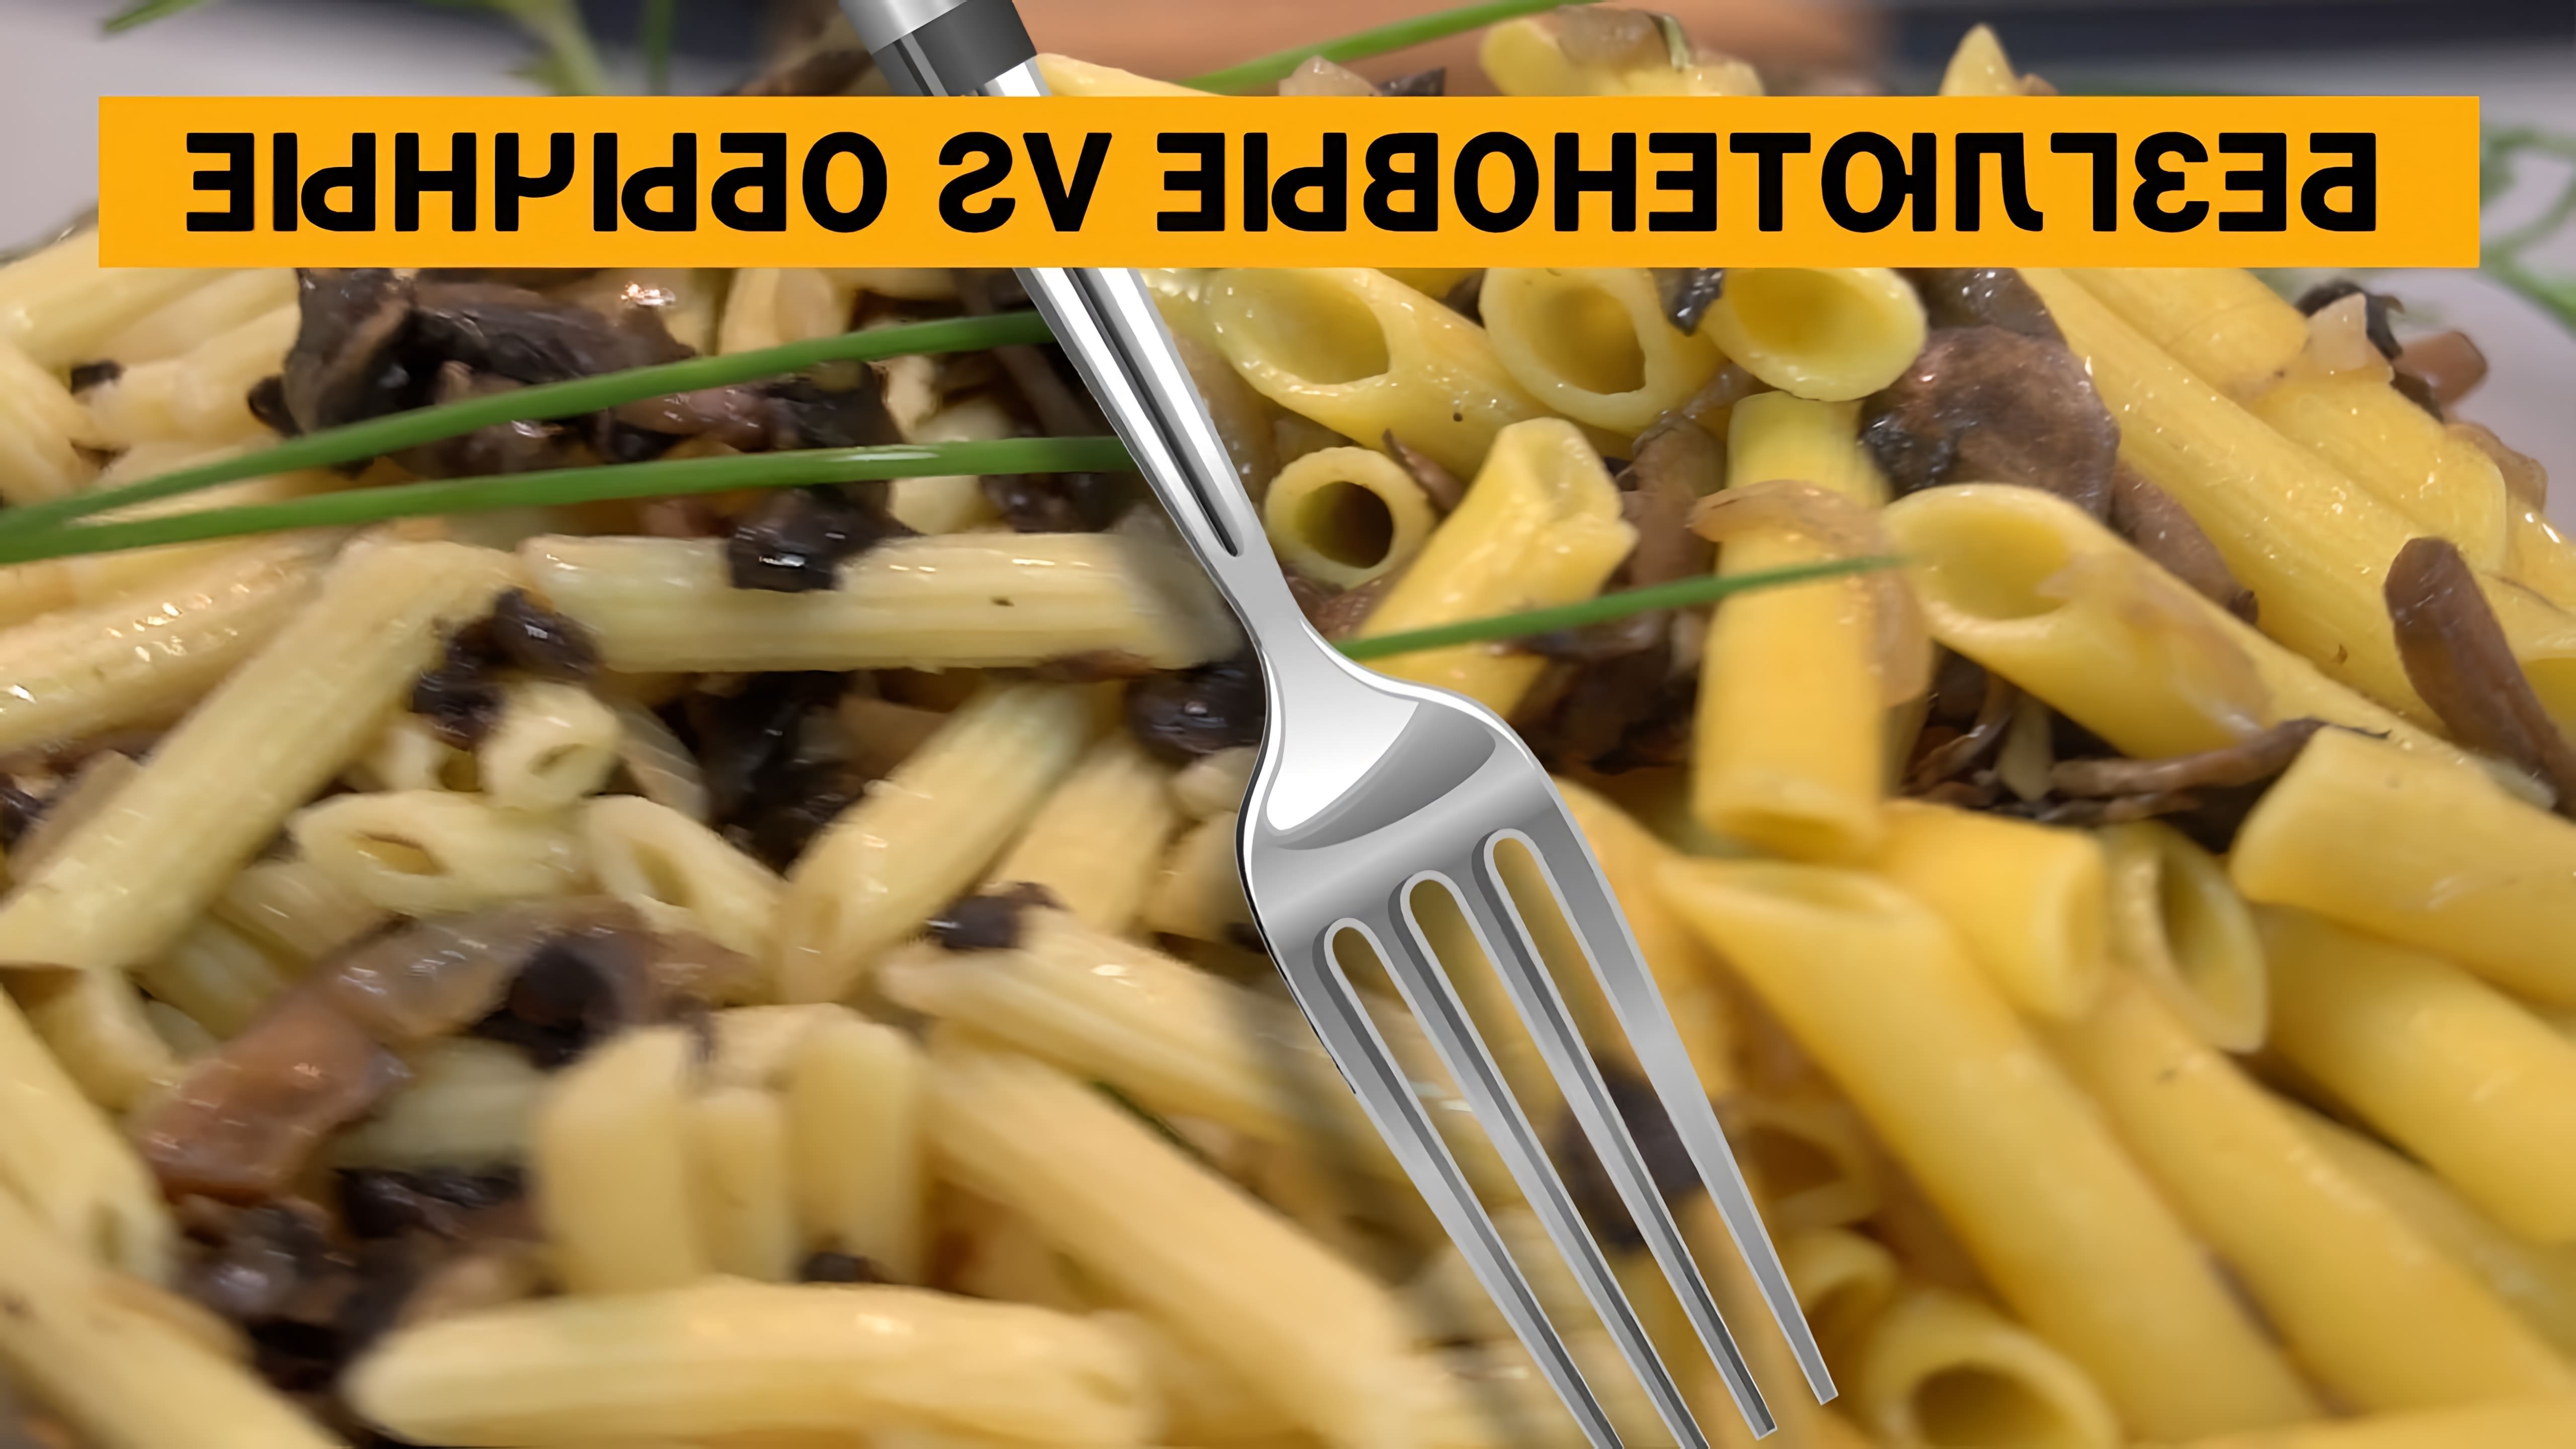 В этом видео демонстрируется рецепт приготовления макарон с грибами